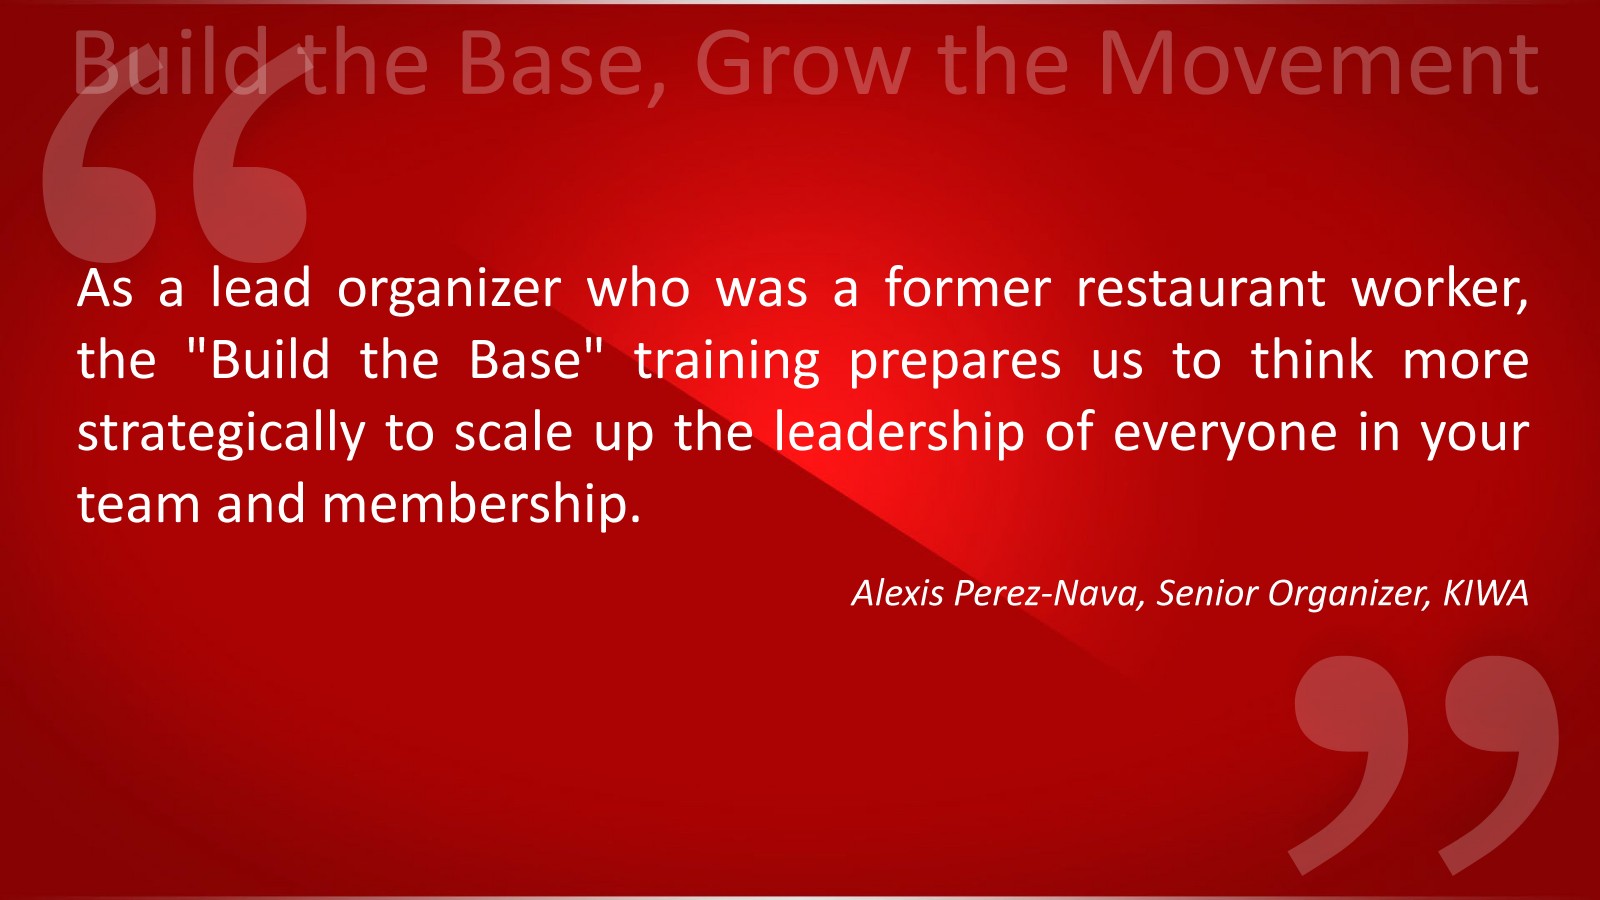 Quote from Alexis Perez-Nava, Senior Organizer, KIWA